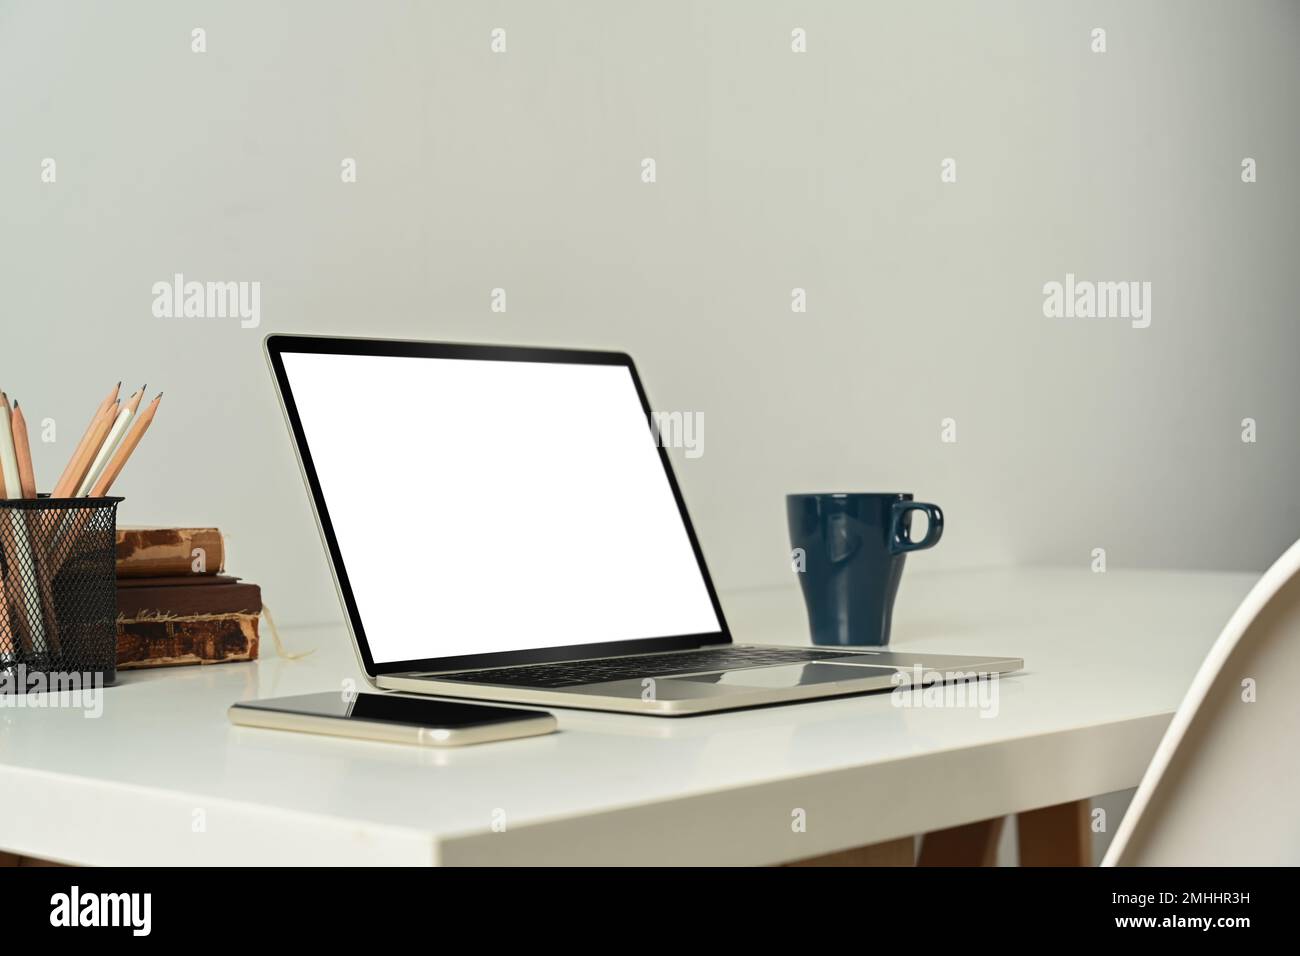 Computer portatile con schermo vuoto, tablet, libri e una tazza di caffè su un tavolo bianco Foto Stock